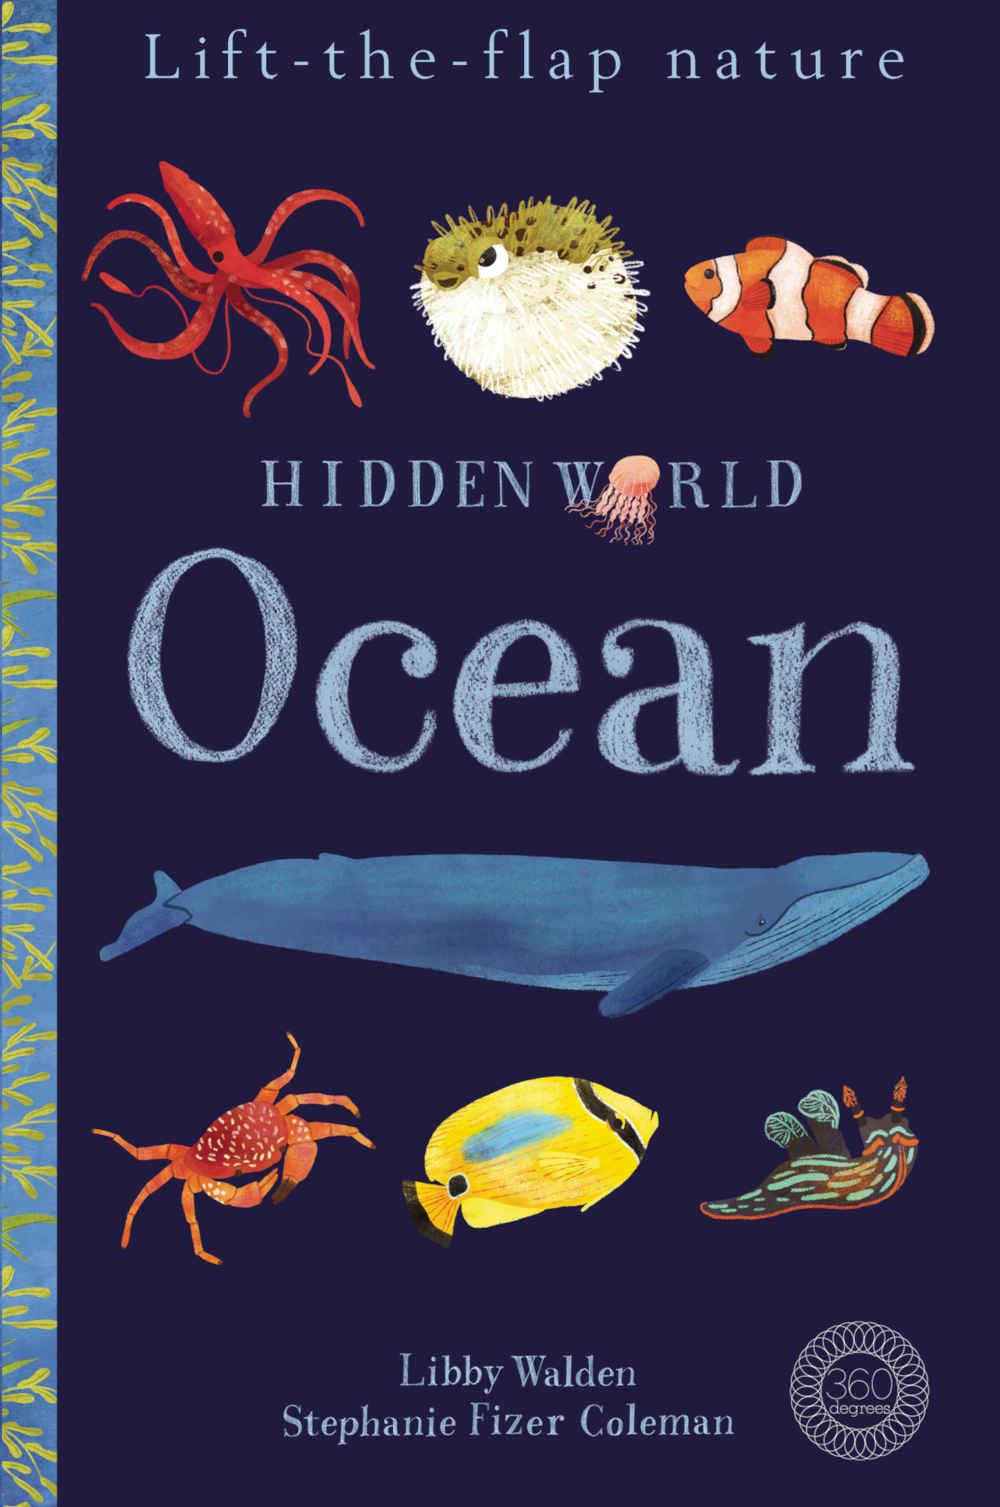 edukacyjna książka dla dzieci o zwierzętach oceanu po angielsku